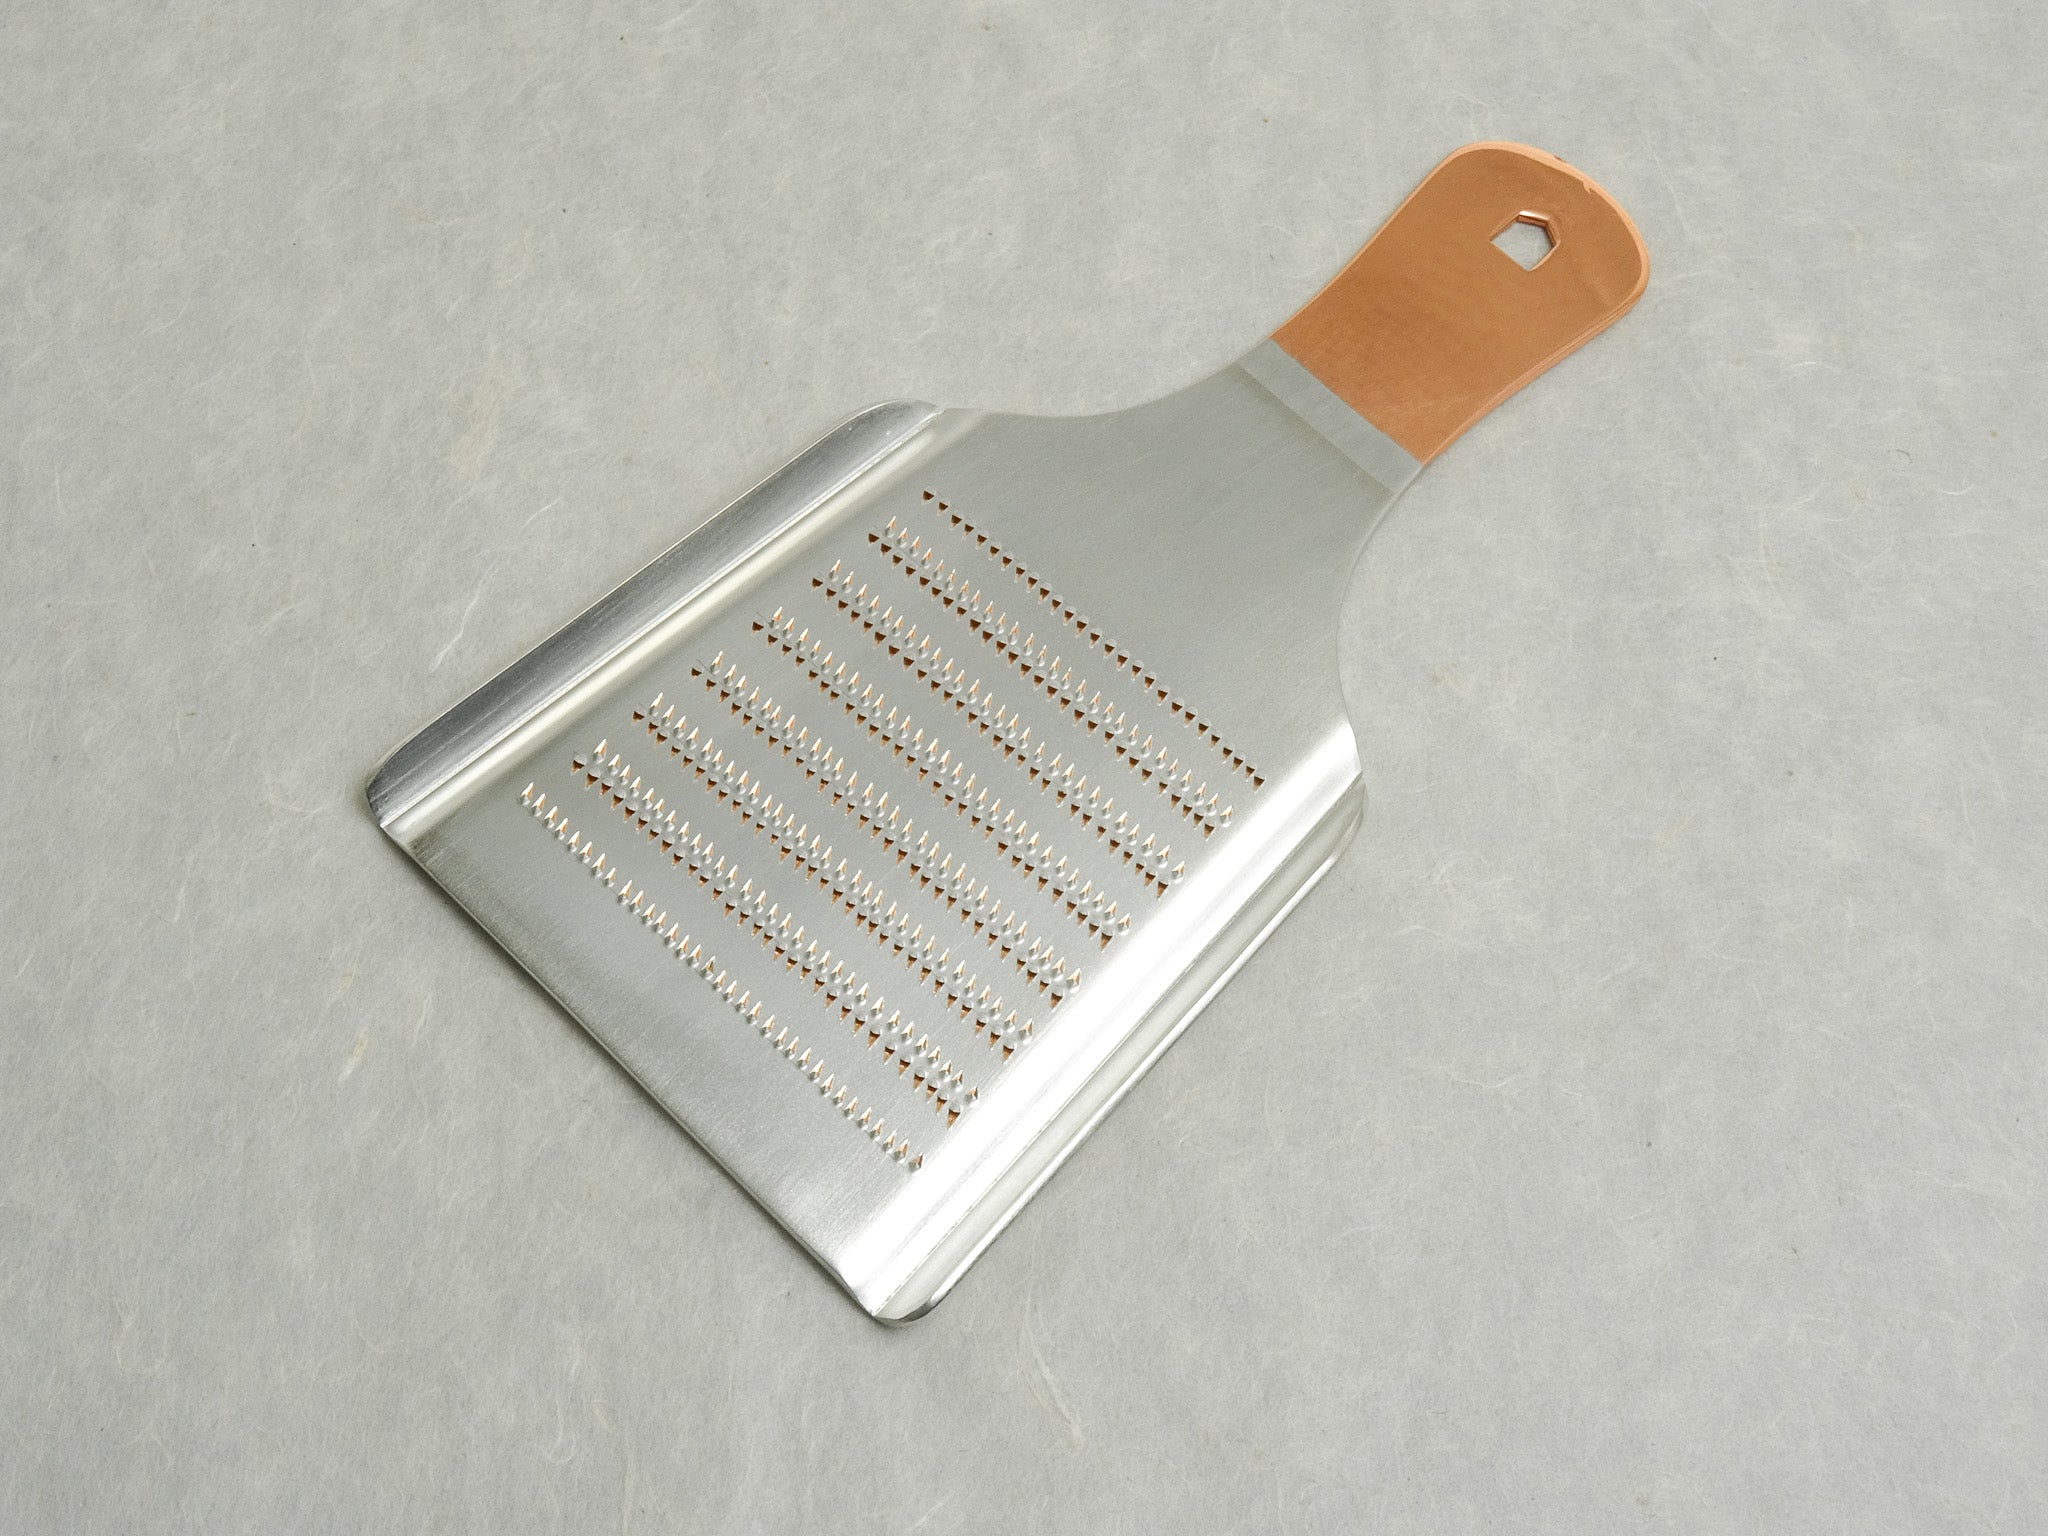 Copper Oroshigane Wasabi grater XL size - Oroshigane metal Wasabi